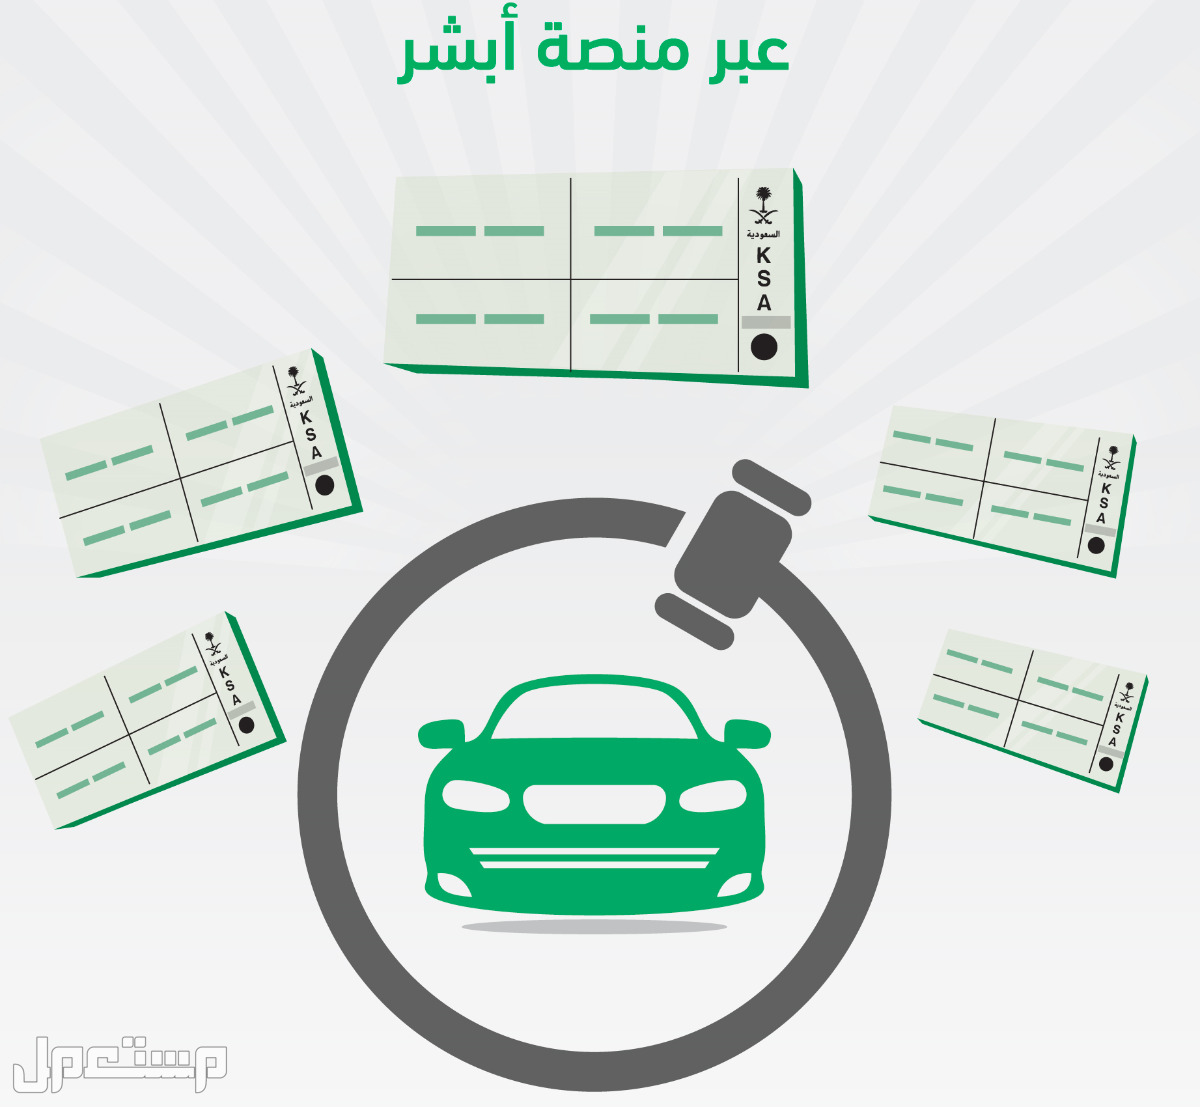 طريقة حجز موعد لحضور مزاد اللوحات الإلكتروني عبر أبشر في السعودية حجز موعد لحضور مزاد اللوحات الإلكتروني